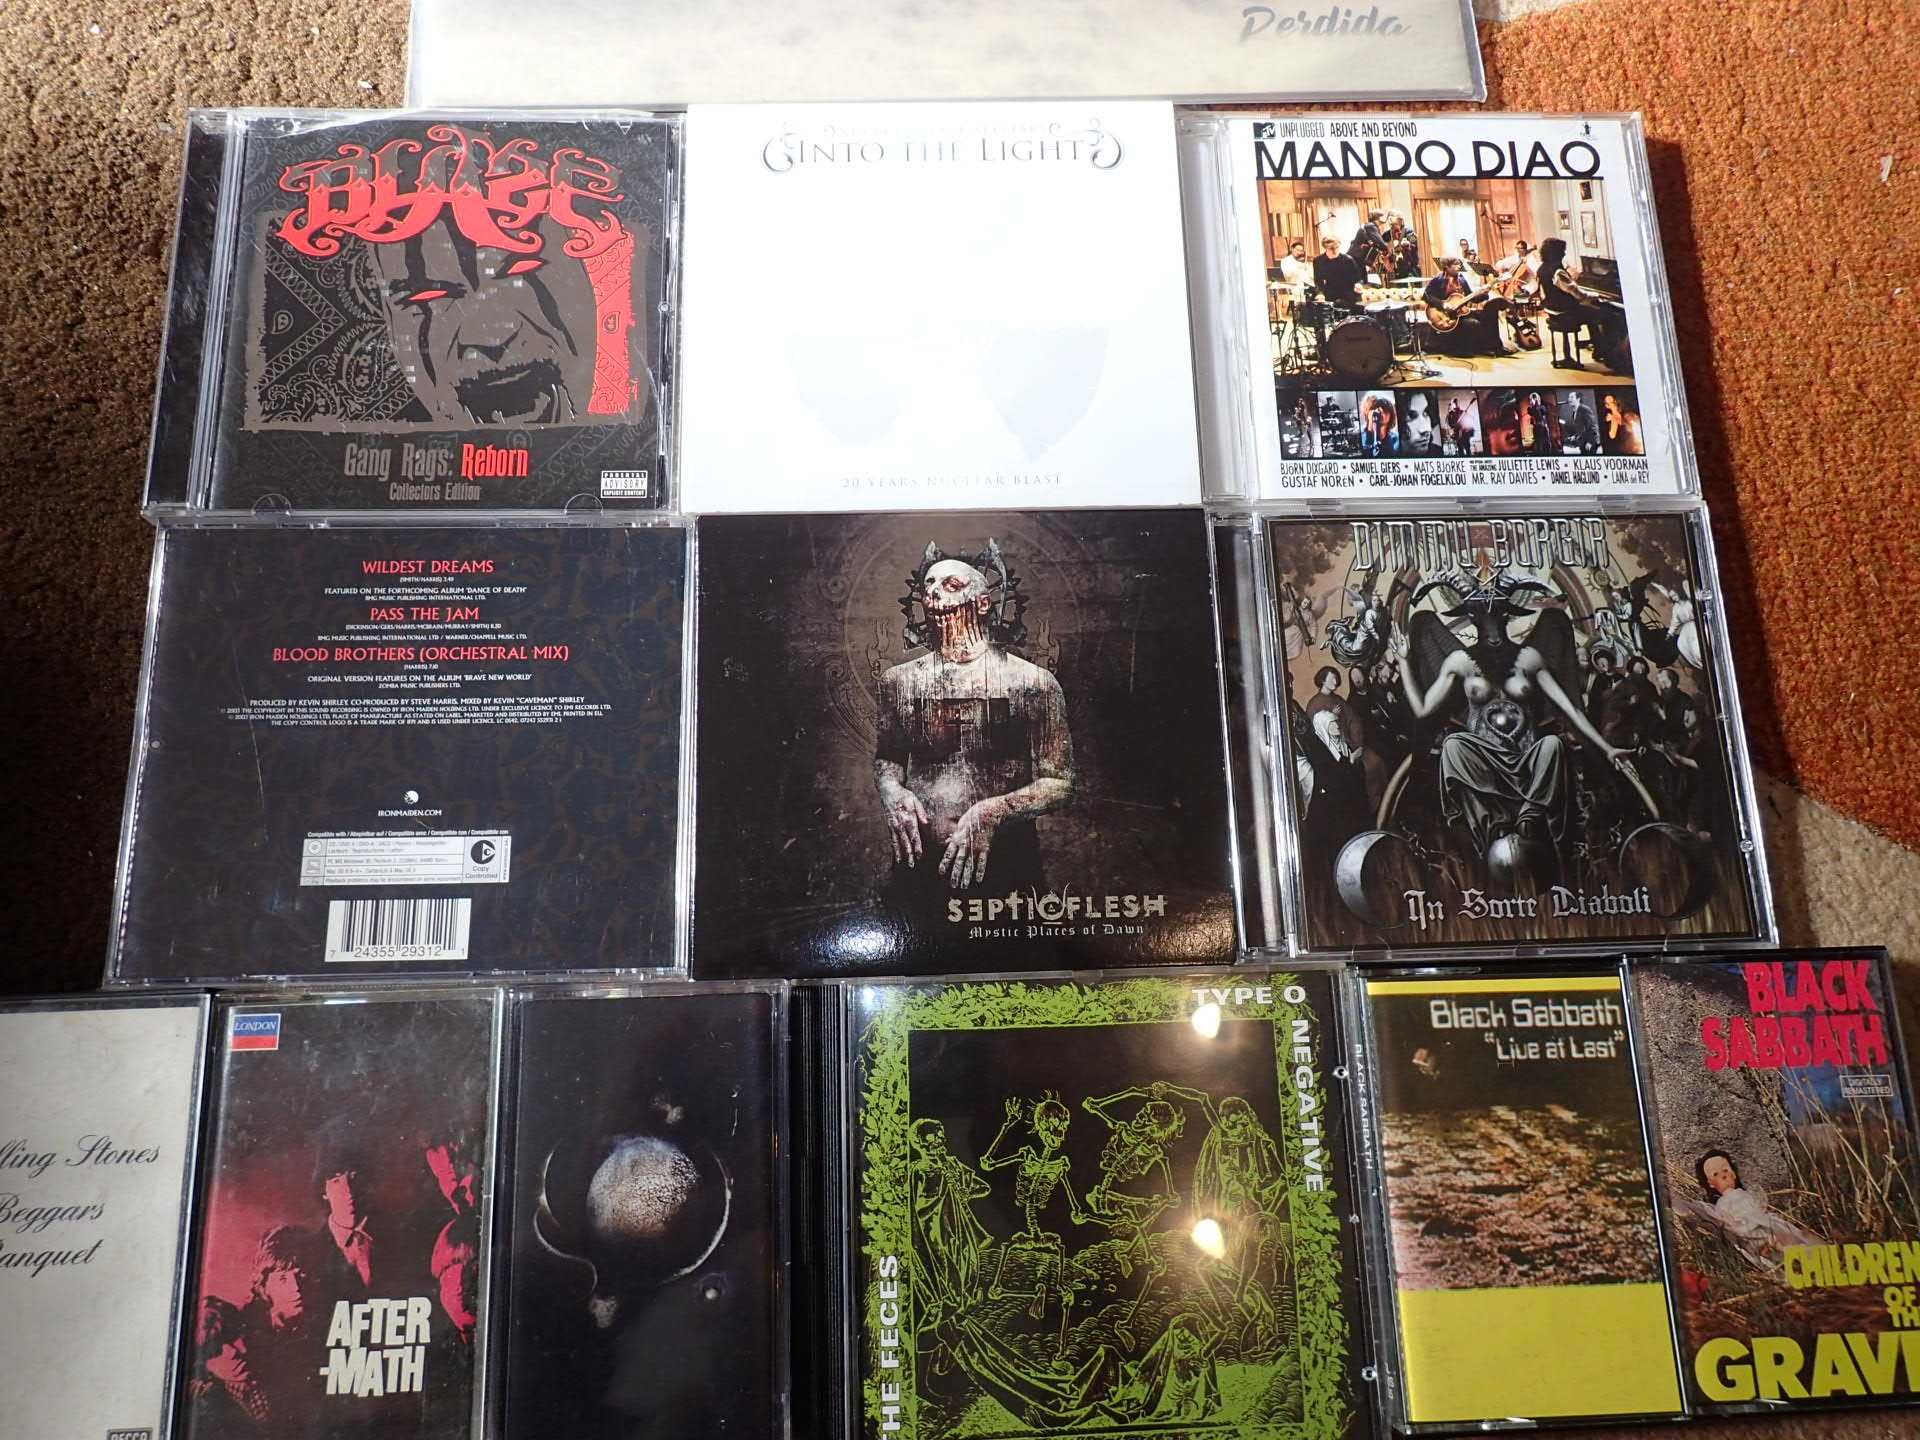 Vários CDs, Cassetes, vinil e DVD - Rock metal, preço na descrição